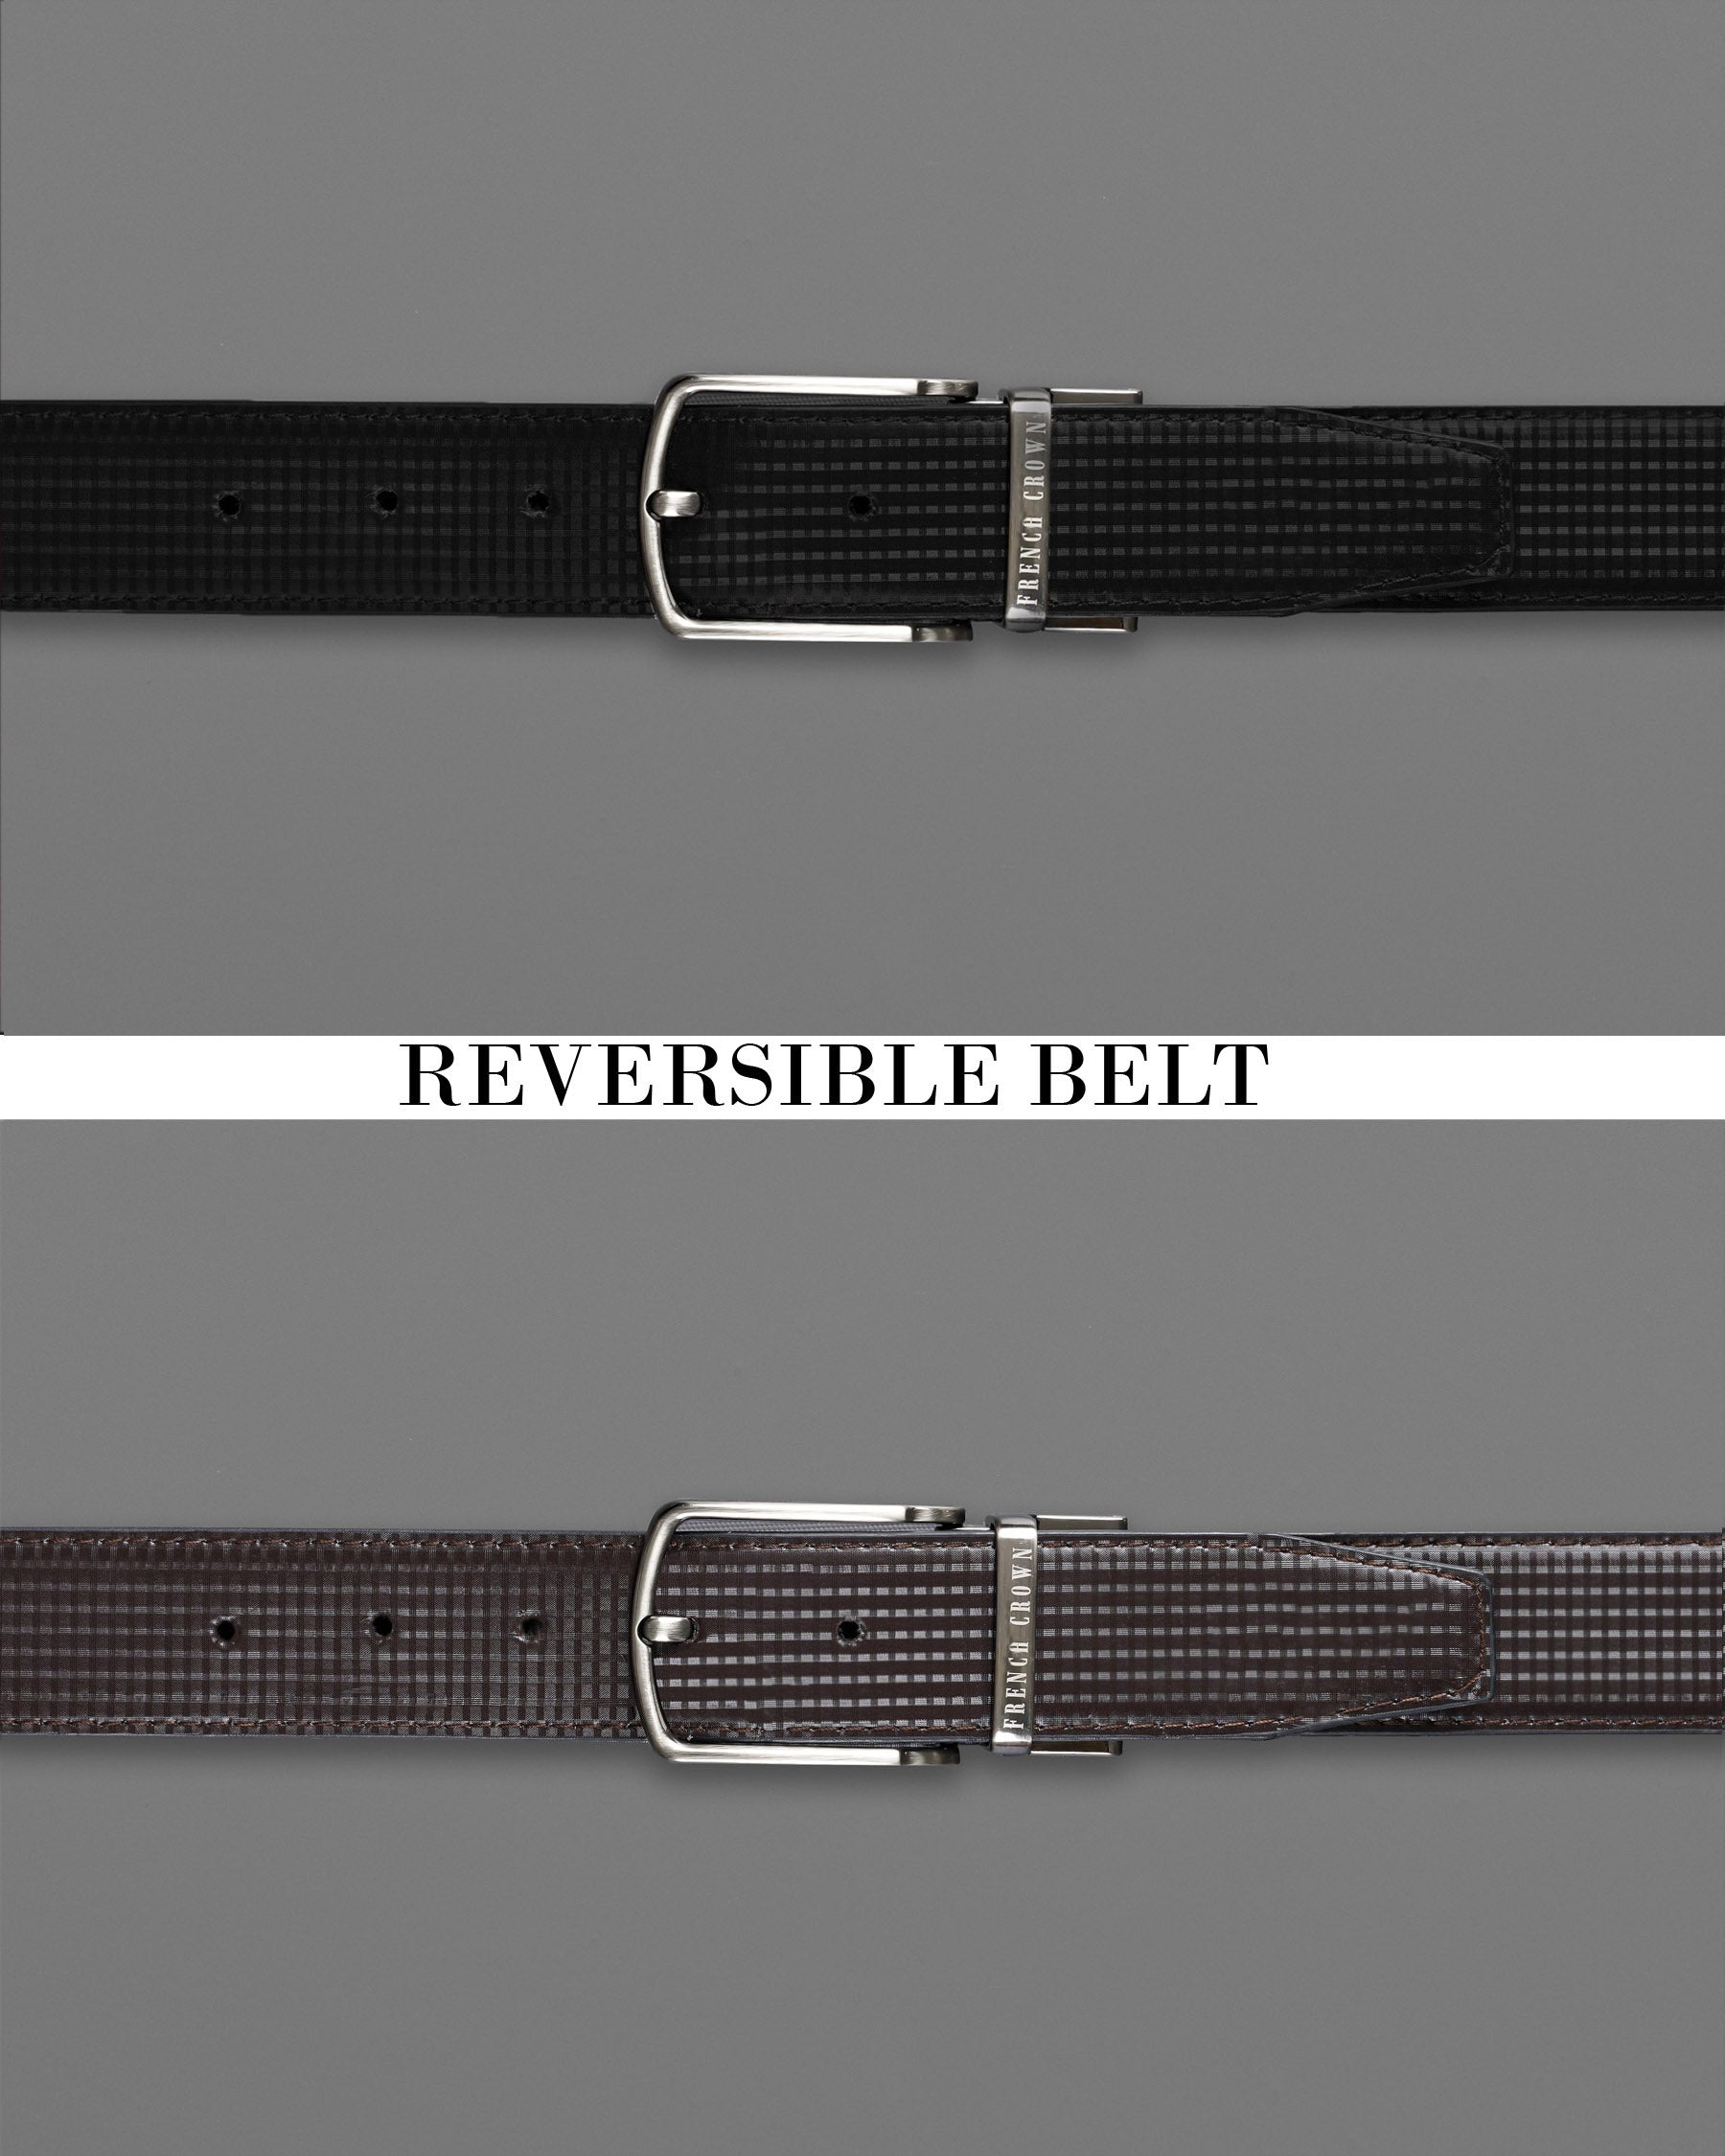 Designer Belt Brands Fashion Men Belts Lady Leather Belt - China